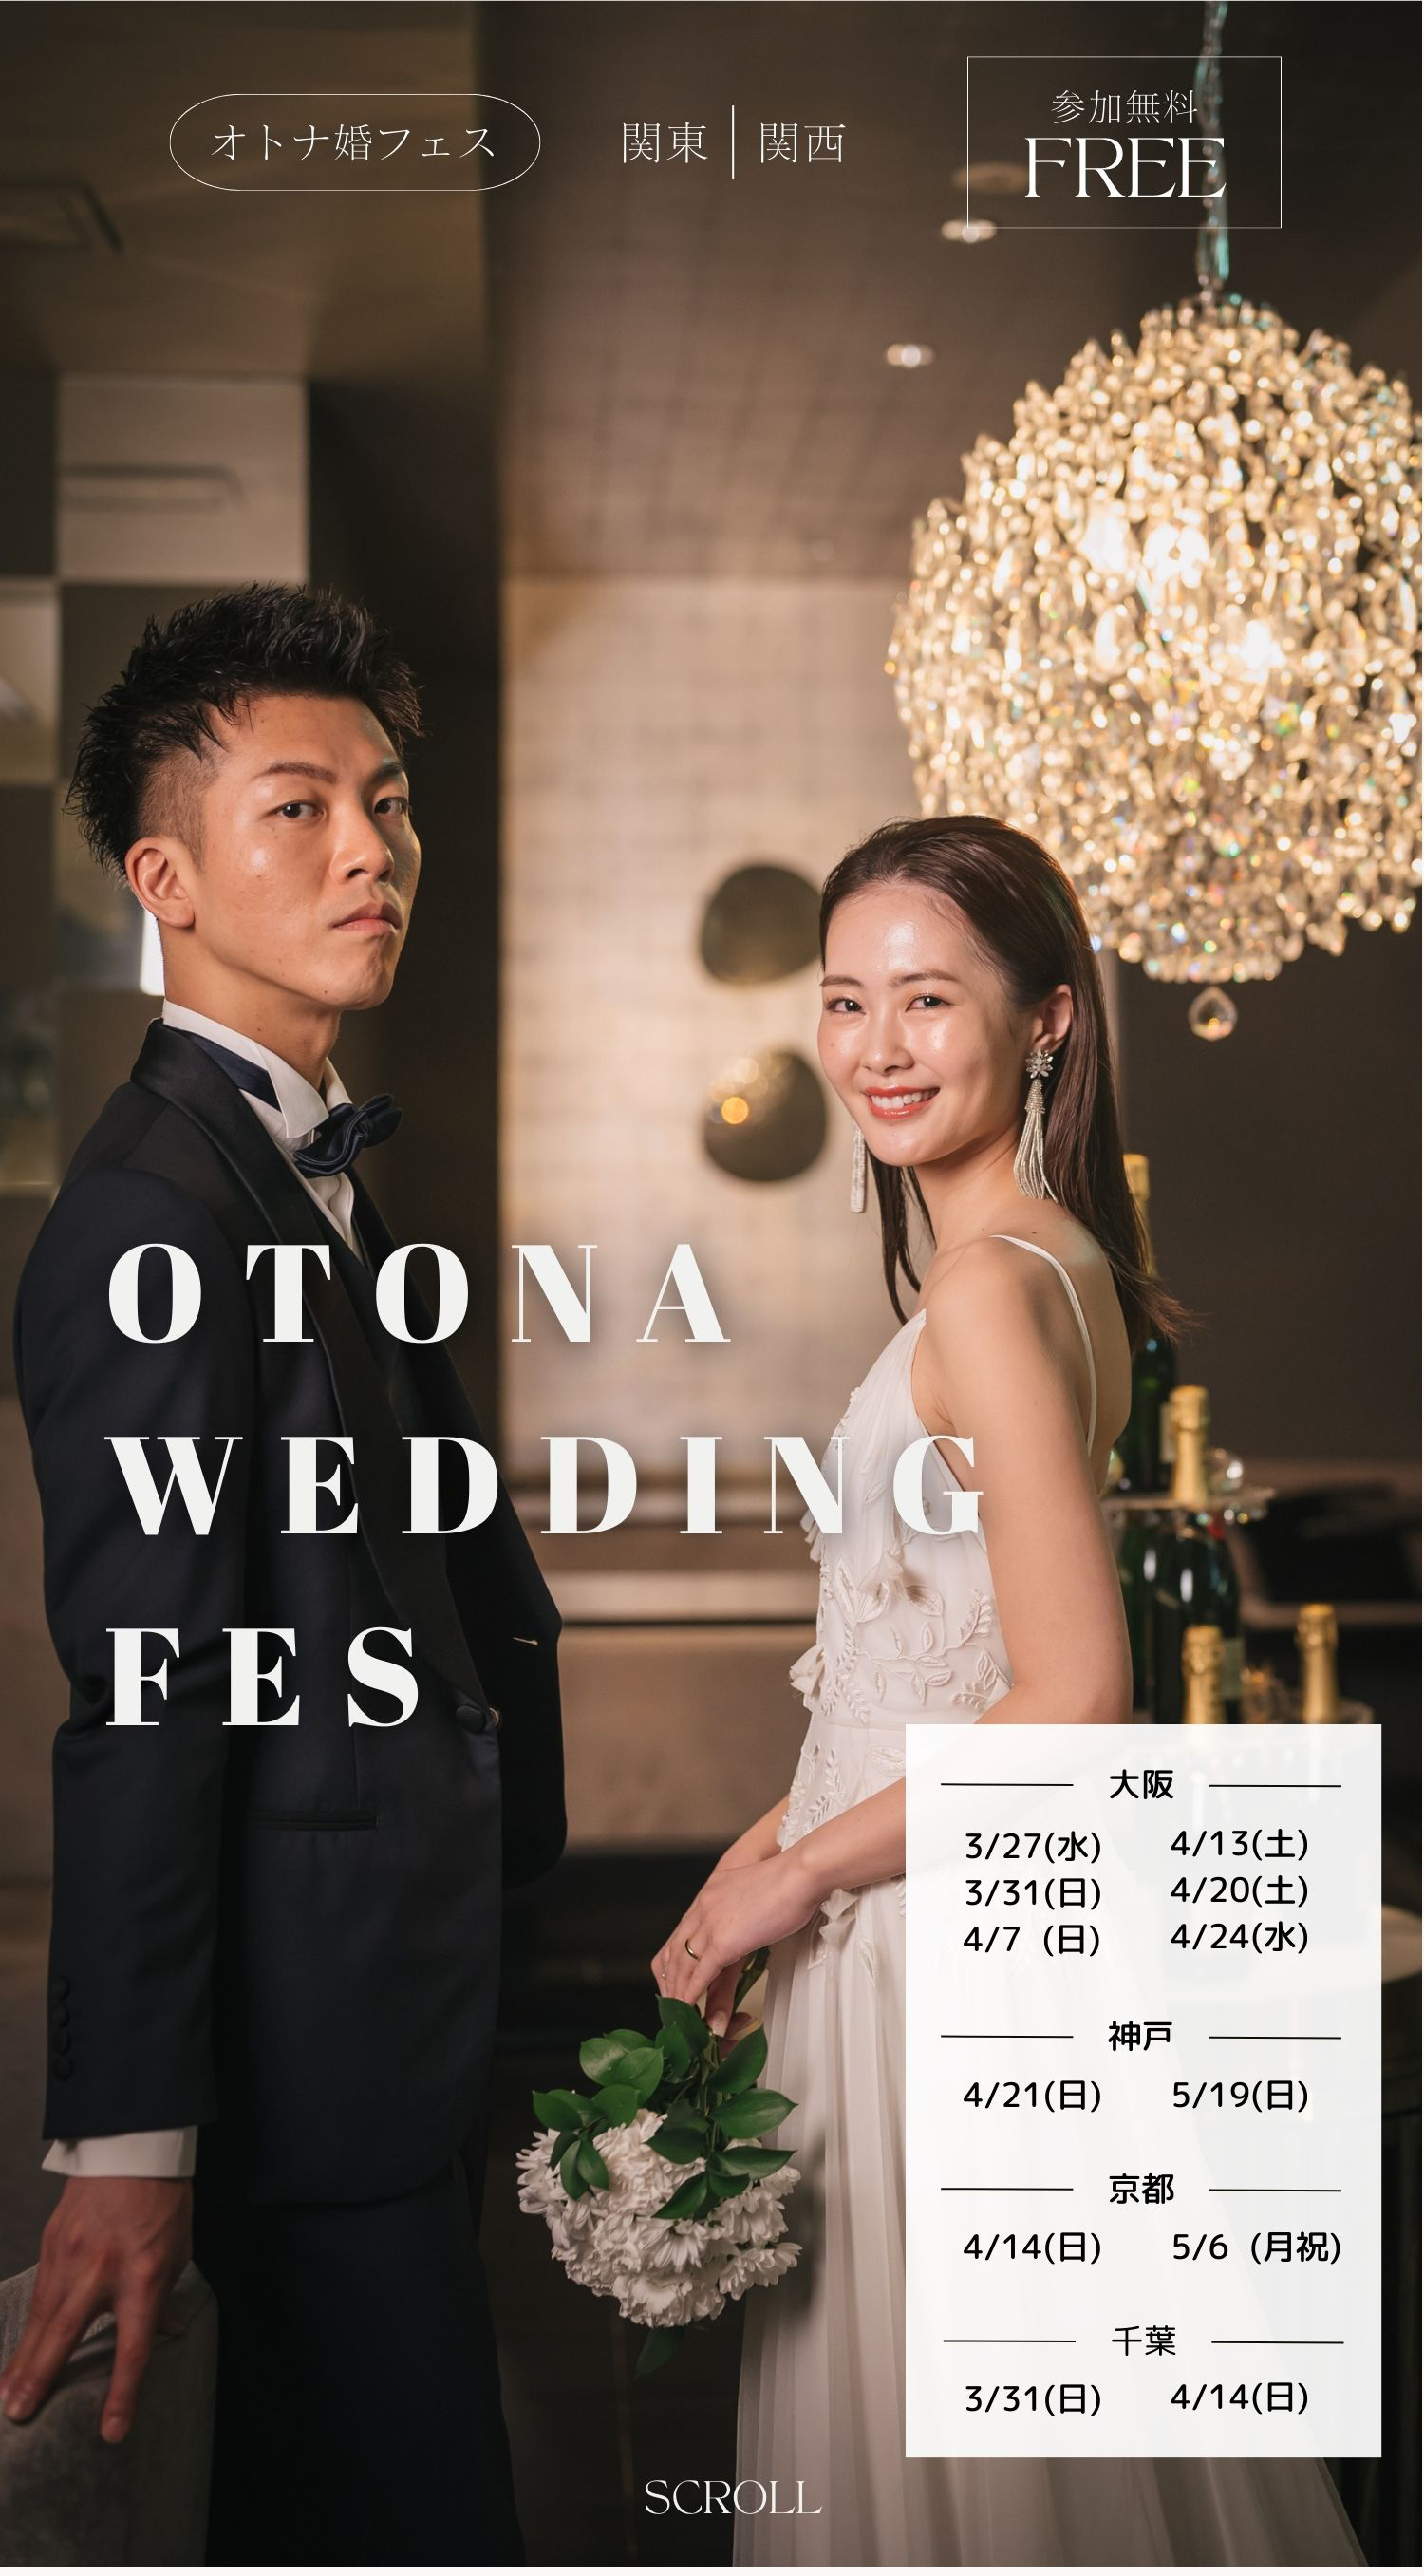 オトナ婚フェス - 結婚式場探しの為の体験型ウエディングイベント